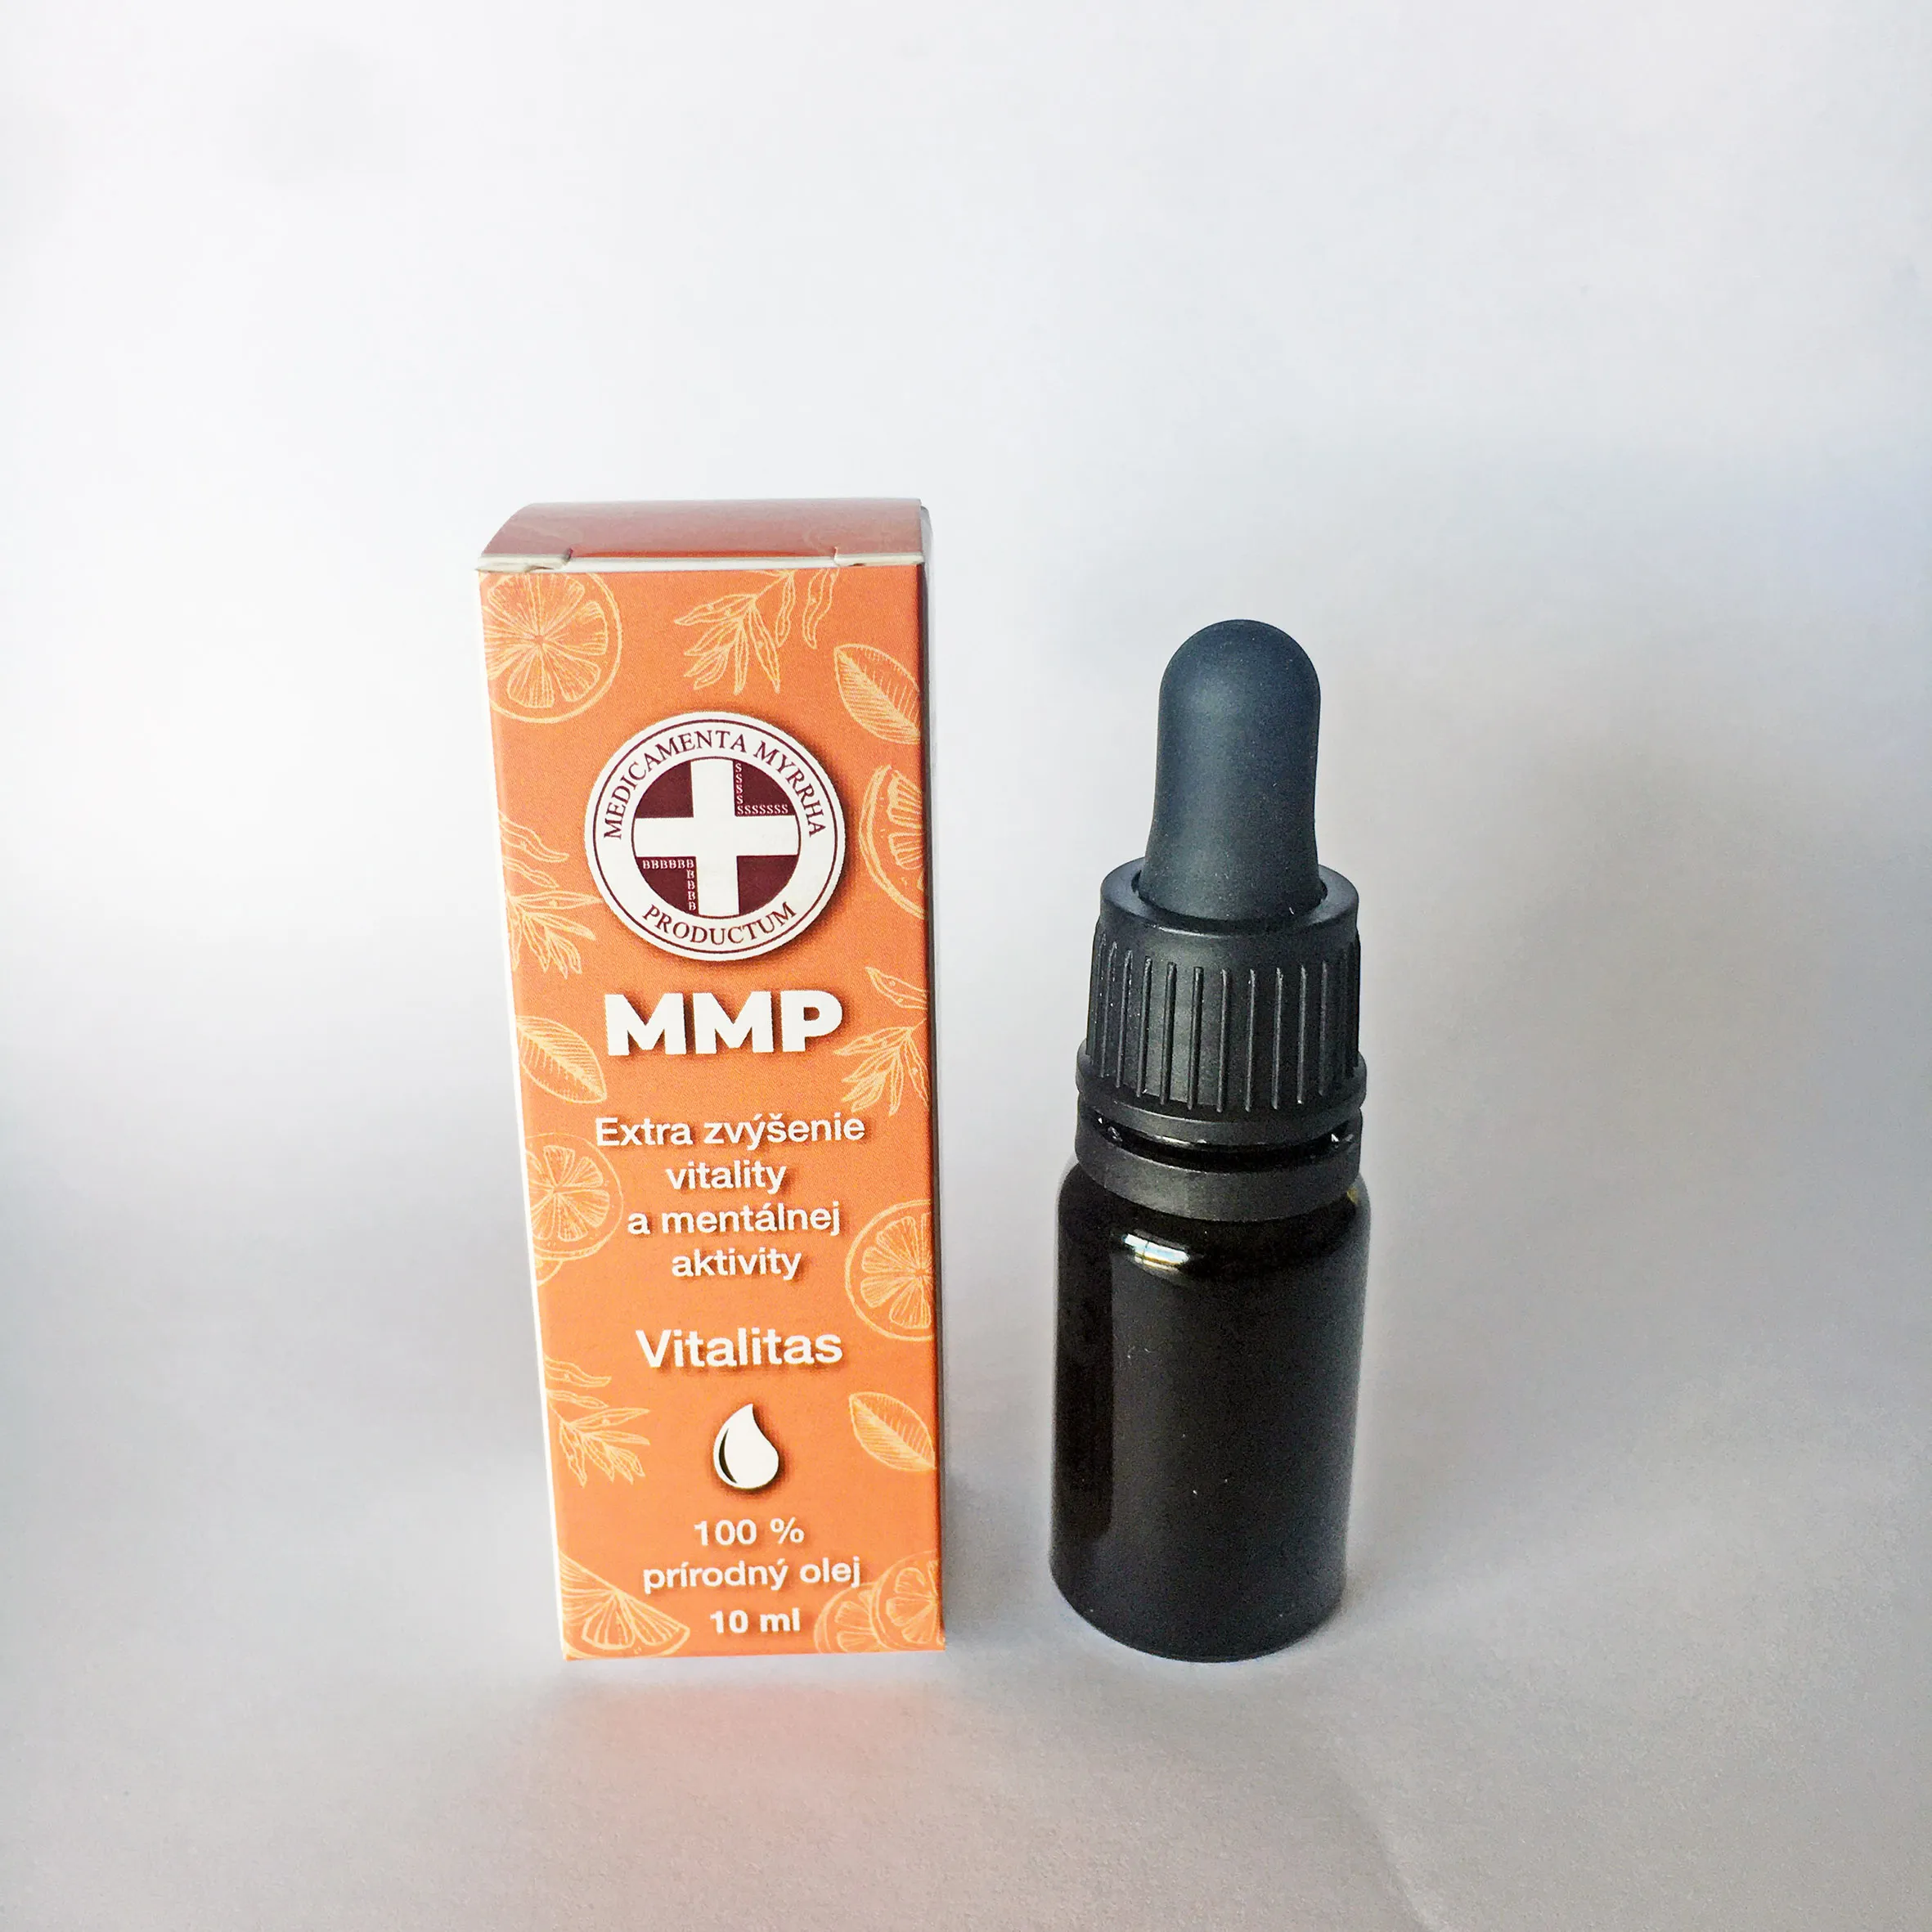 MMP olej Vitalitas - extra zvýšenie vitality a mentálnej aktivity 1×10 ml, BIO olej